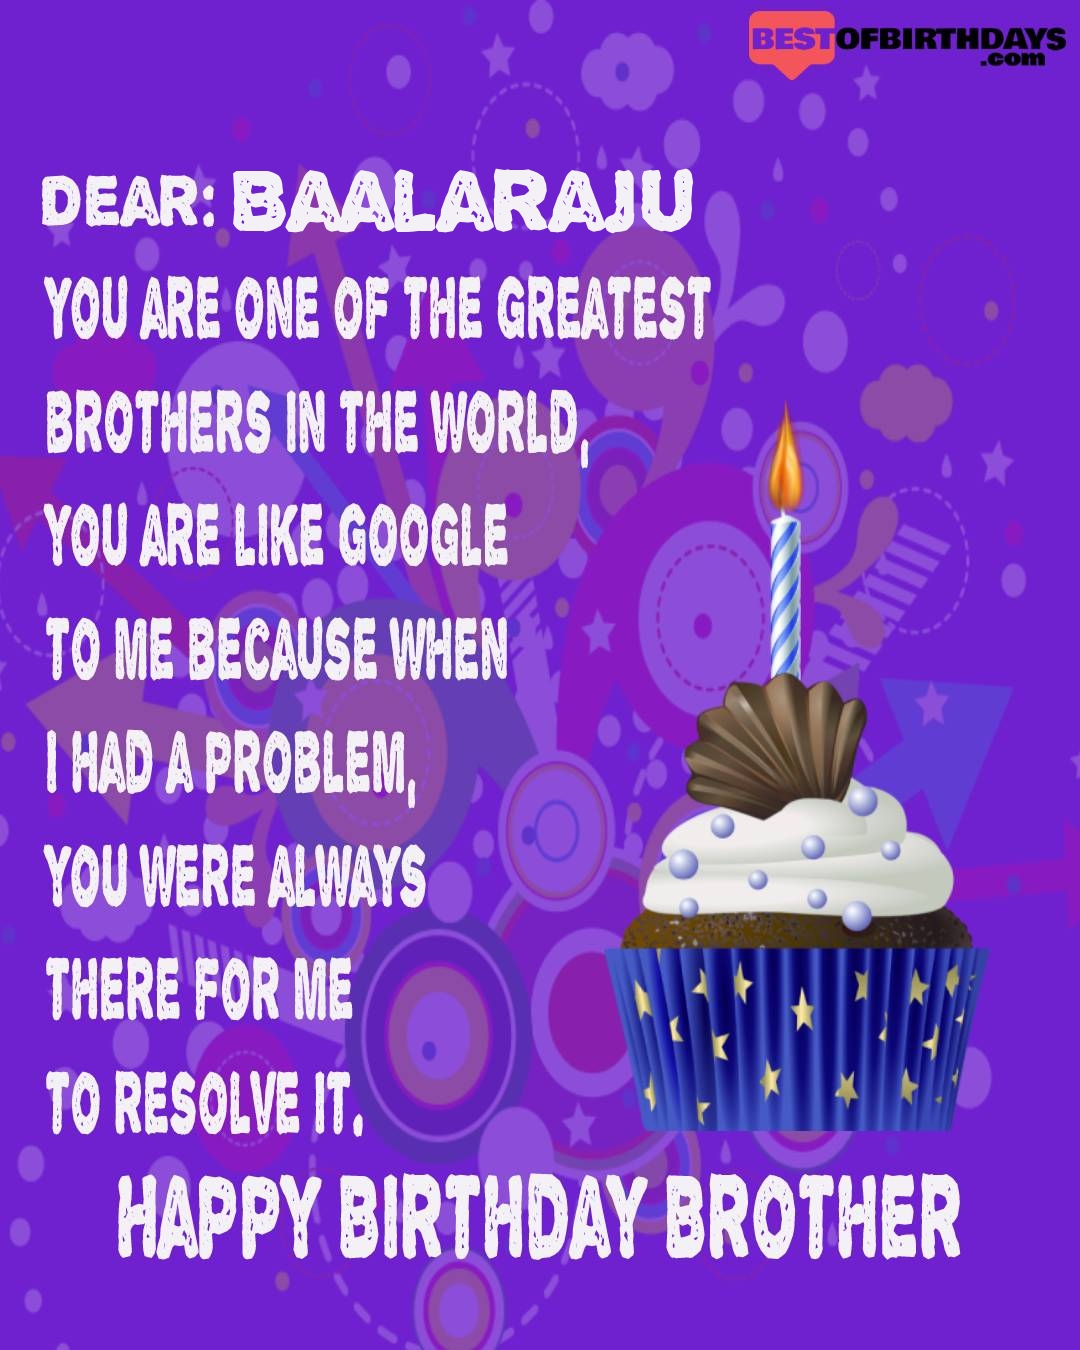 Happy birthday baalaraju bhai brother bro